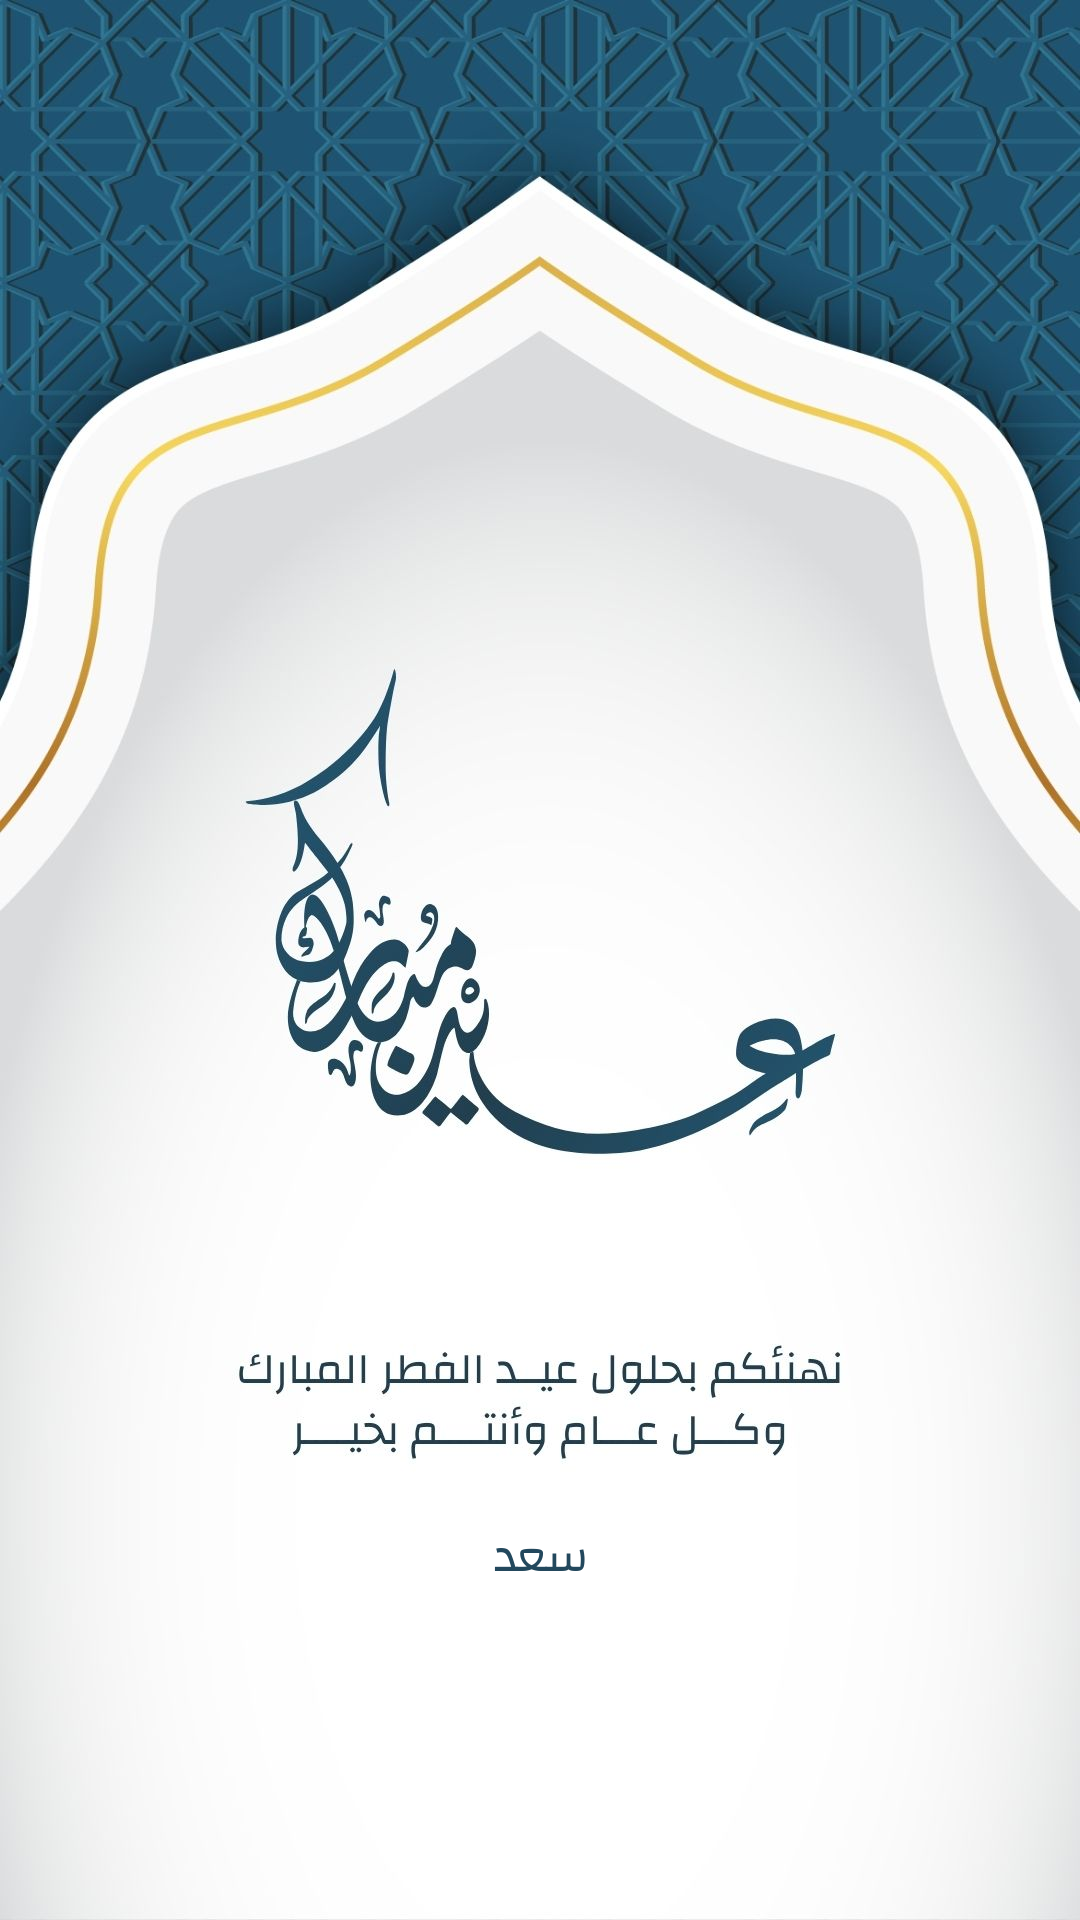 اسم سعد على صورة ضمن خدمة اكتب اسمك على بطاقة تهنئة عيد الفطر